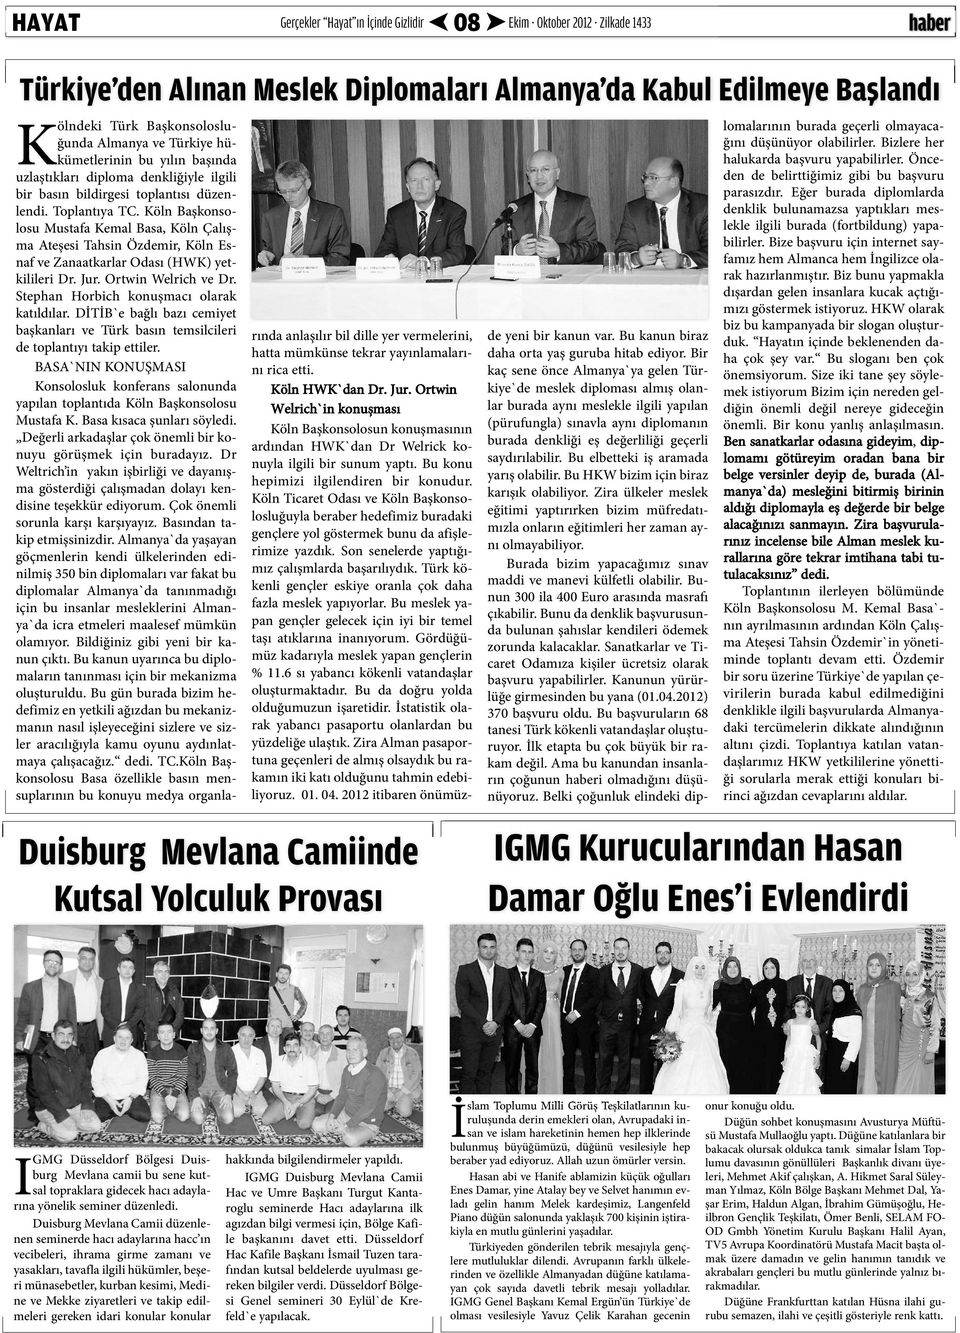 Köln Başkonsolosu Mustafa Kemal Basa, Köln Çalışma Ateşesi Tahsin Özdemir, Köln Esnaf ve Zanaatkarlar Odası (HWK) yetkilileri Dr. Jur. Ortwin Welrich ve Dr.